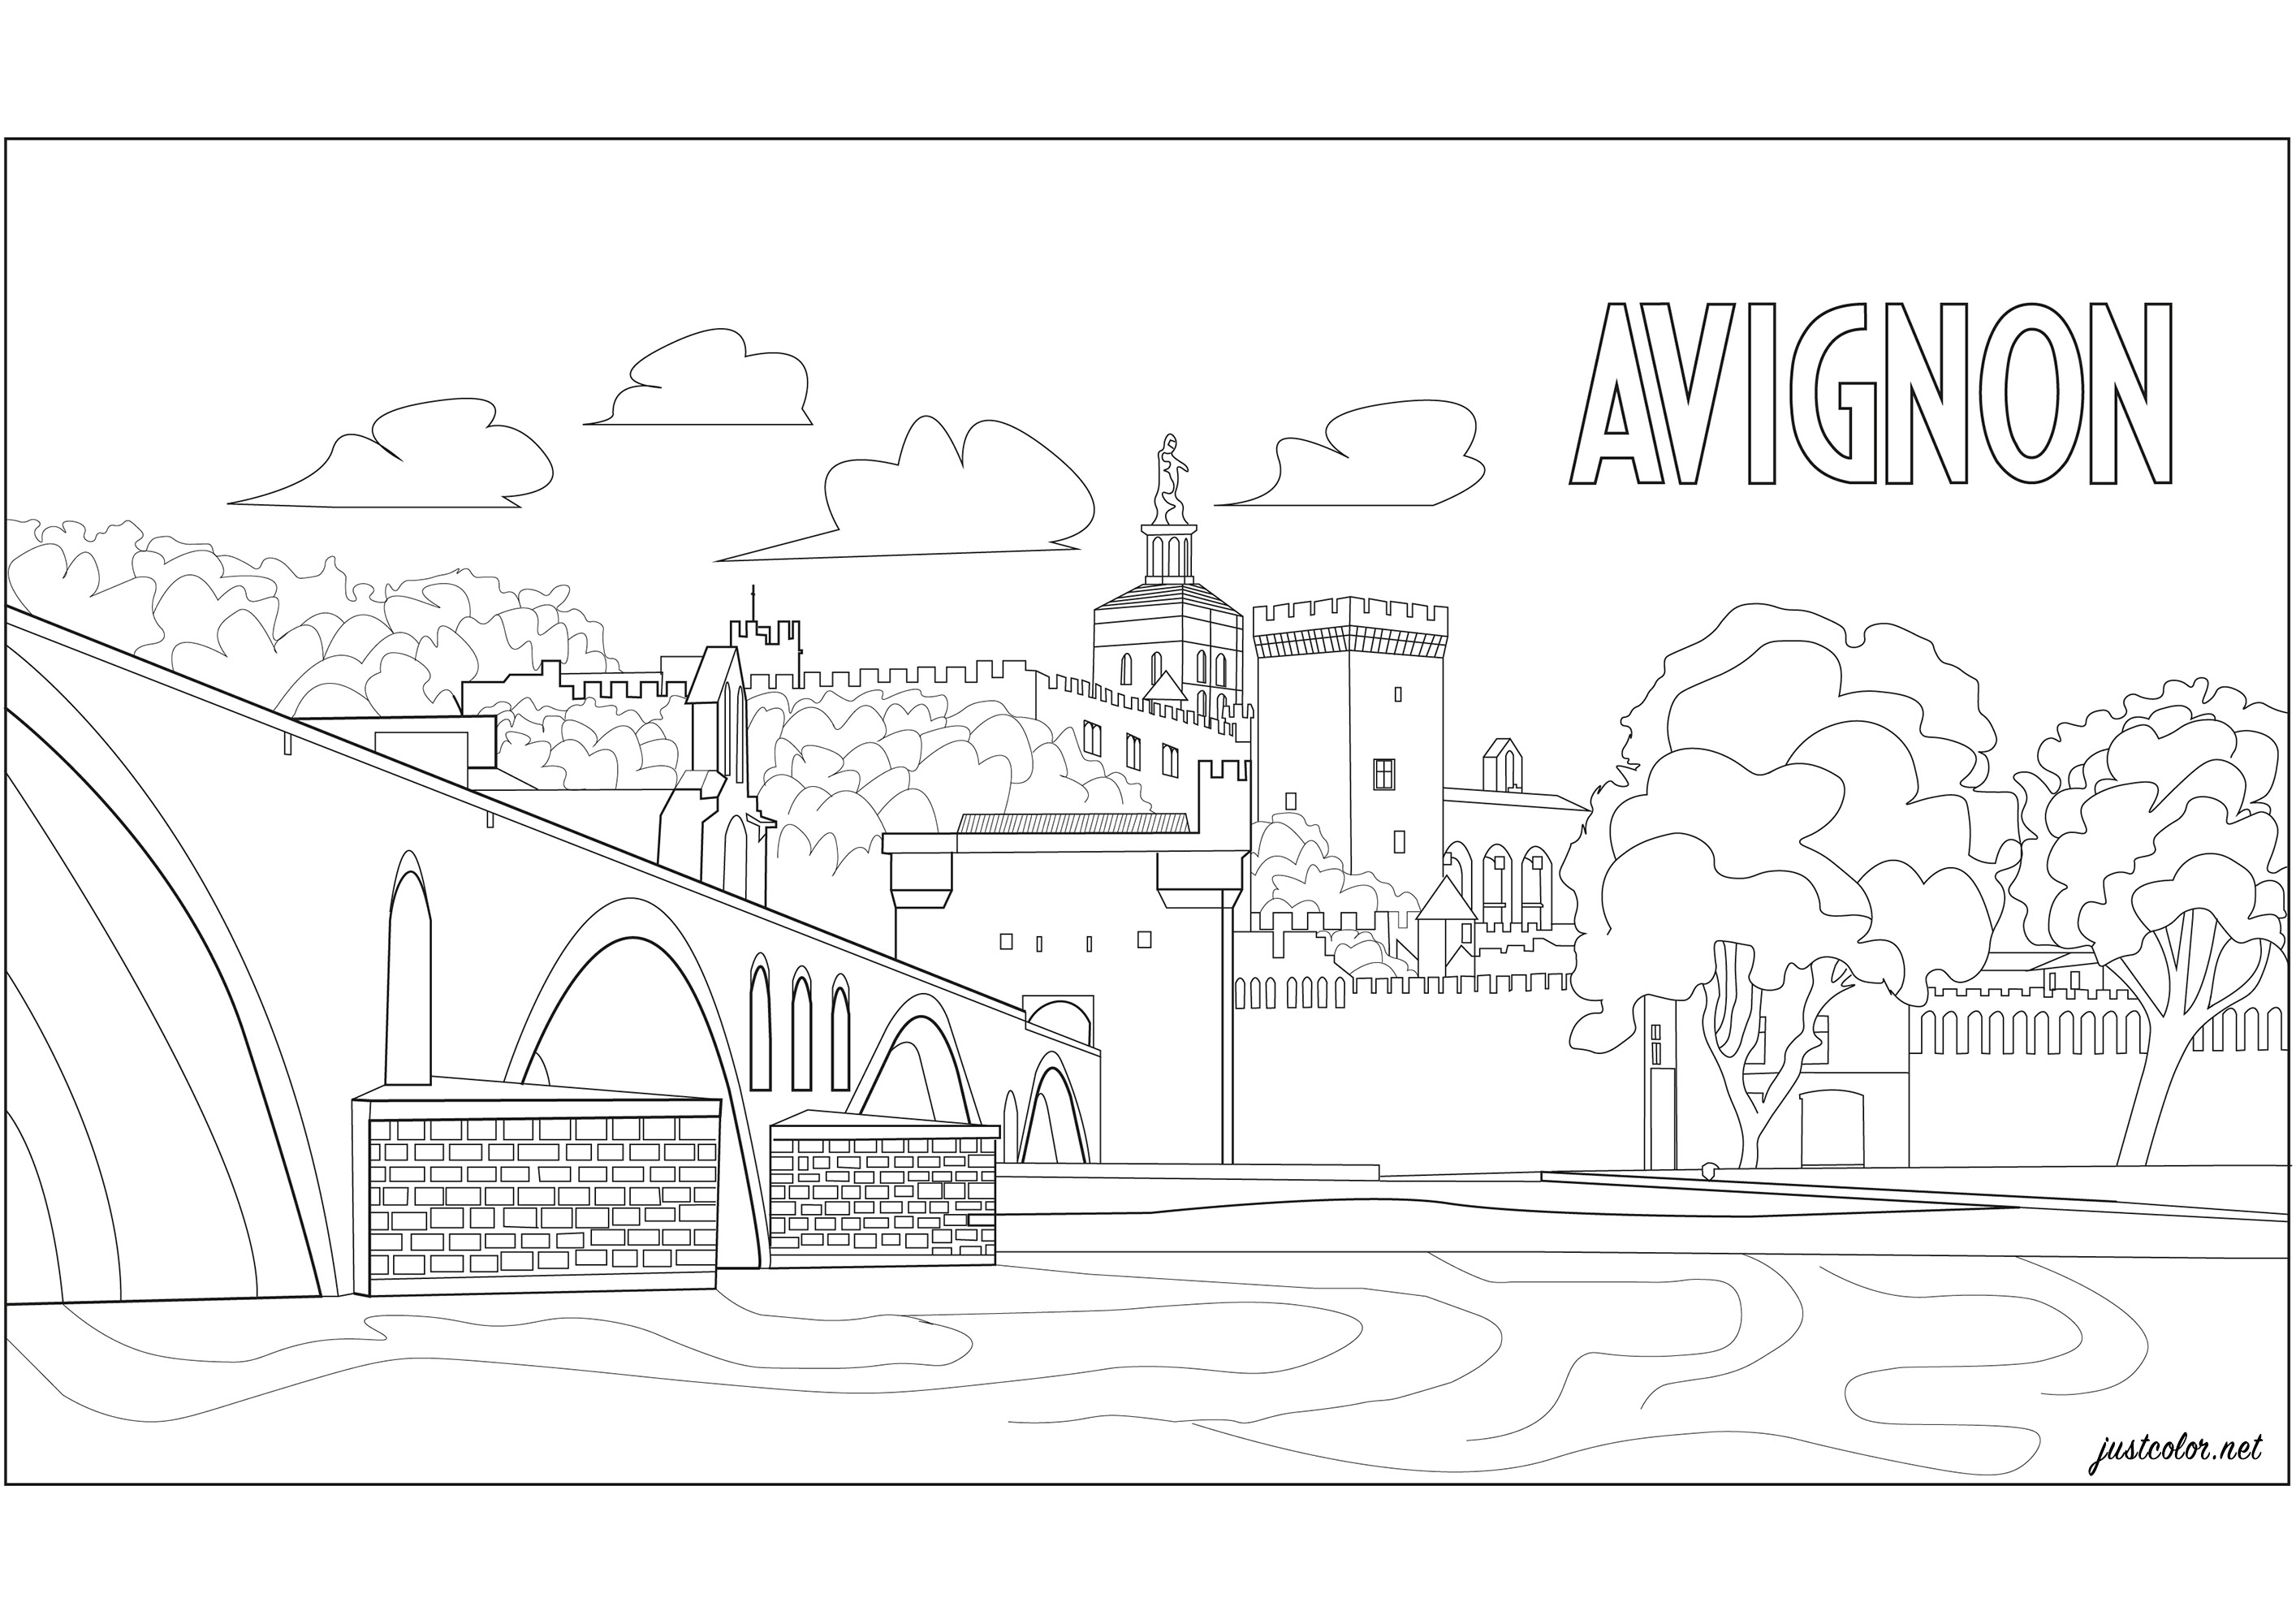 Avignon (França) : O Palácio dos Papas e a ' Pont d'Avignon '. Estão situados no sul de França, na margem do rio Ródano.
O Palácio dos Papas era simultaneamente uma fortaleza e um palácio. É a maior construção gótica da Idade Média e a sede do papado no século XIV.
Famosa pela sua canção popular francesa, mesmo ao lado fica a ponte Saint-Bénézet, vulgarmente chamada 'Pont d'Avignon'.
É o que resta de uma ponte sobre o Ródano. Restam apenas quatro arcos, os outros foram levados pelas cheias.